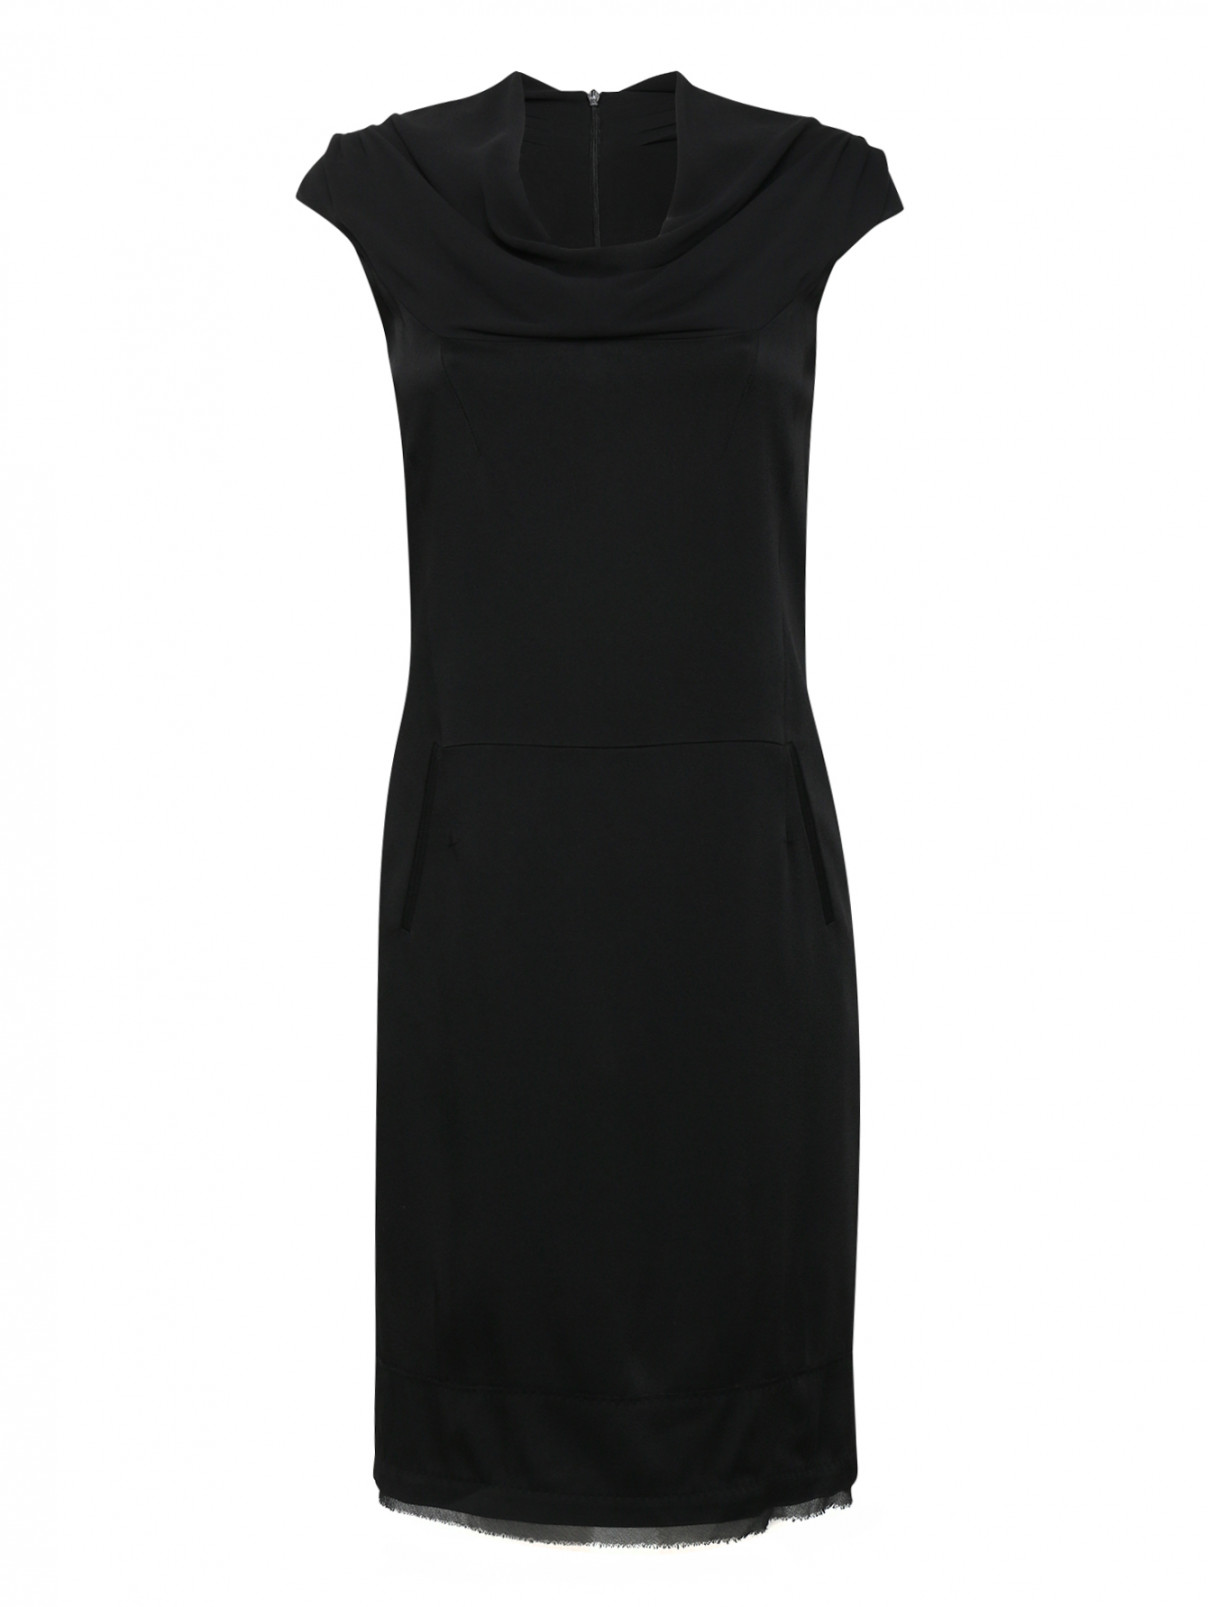 Однотонное платье-футляр с драпировкой Costume National  –  Общий вид  – Цвет:  Черный